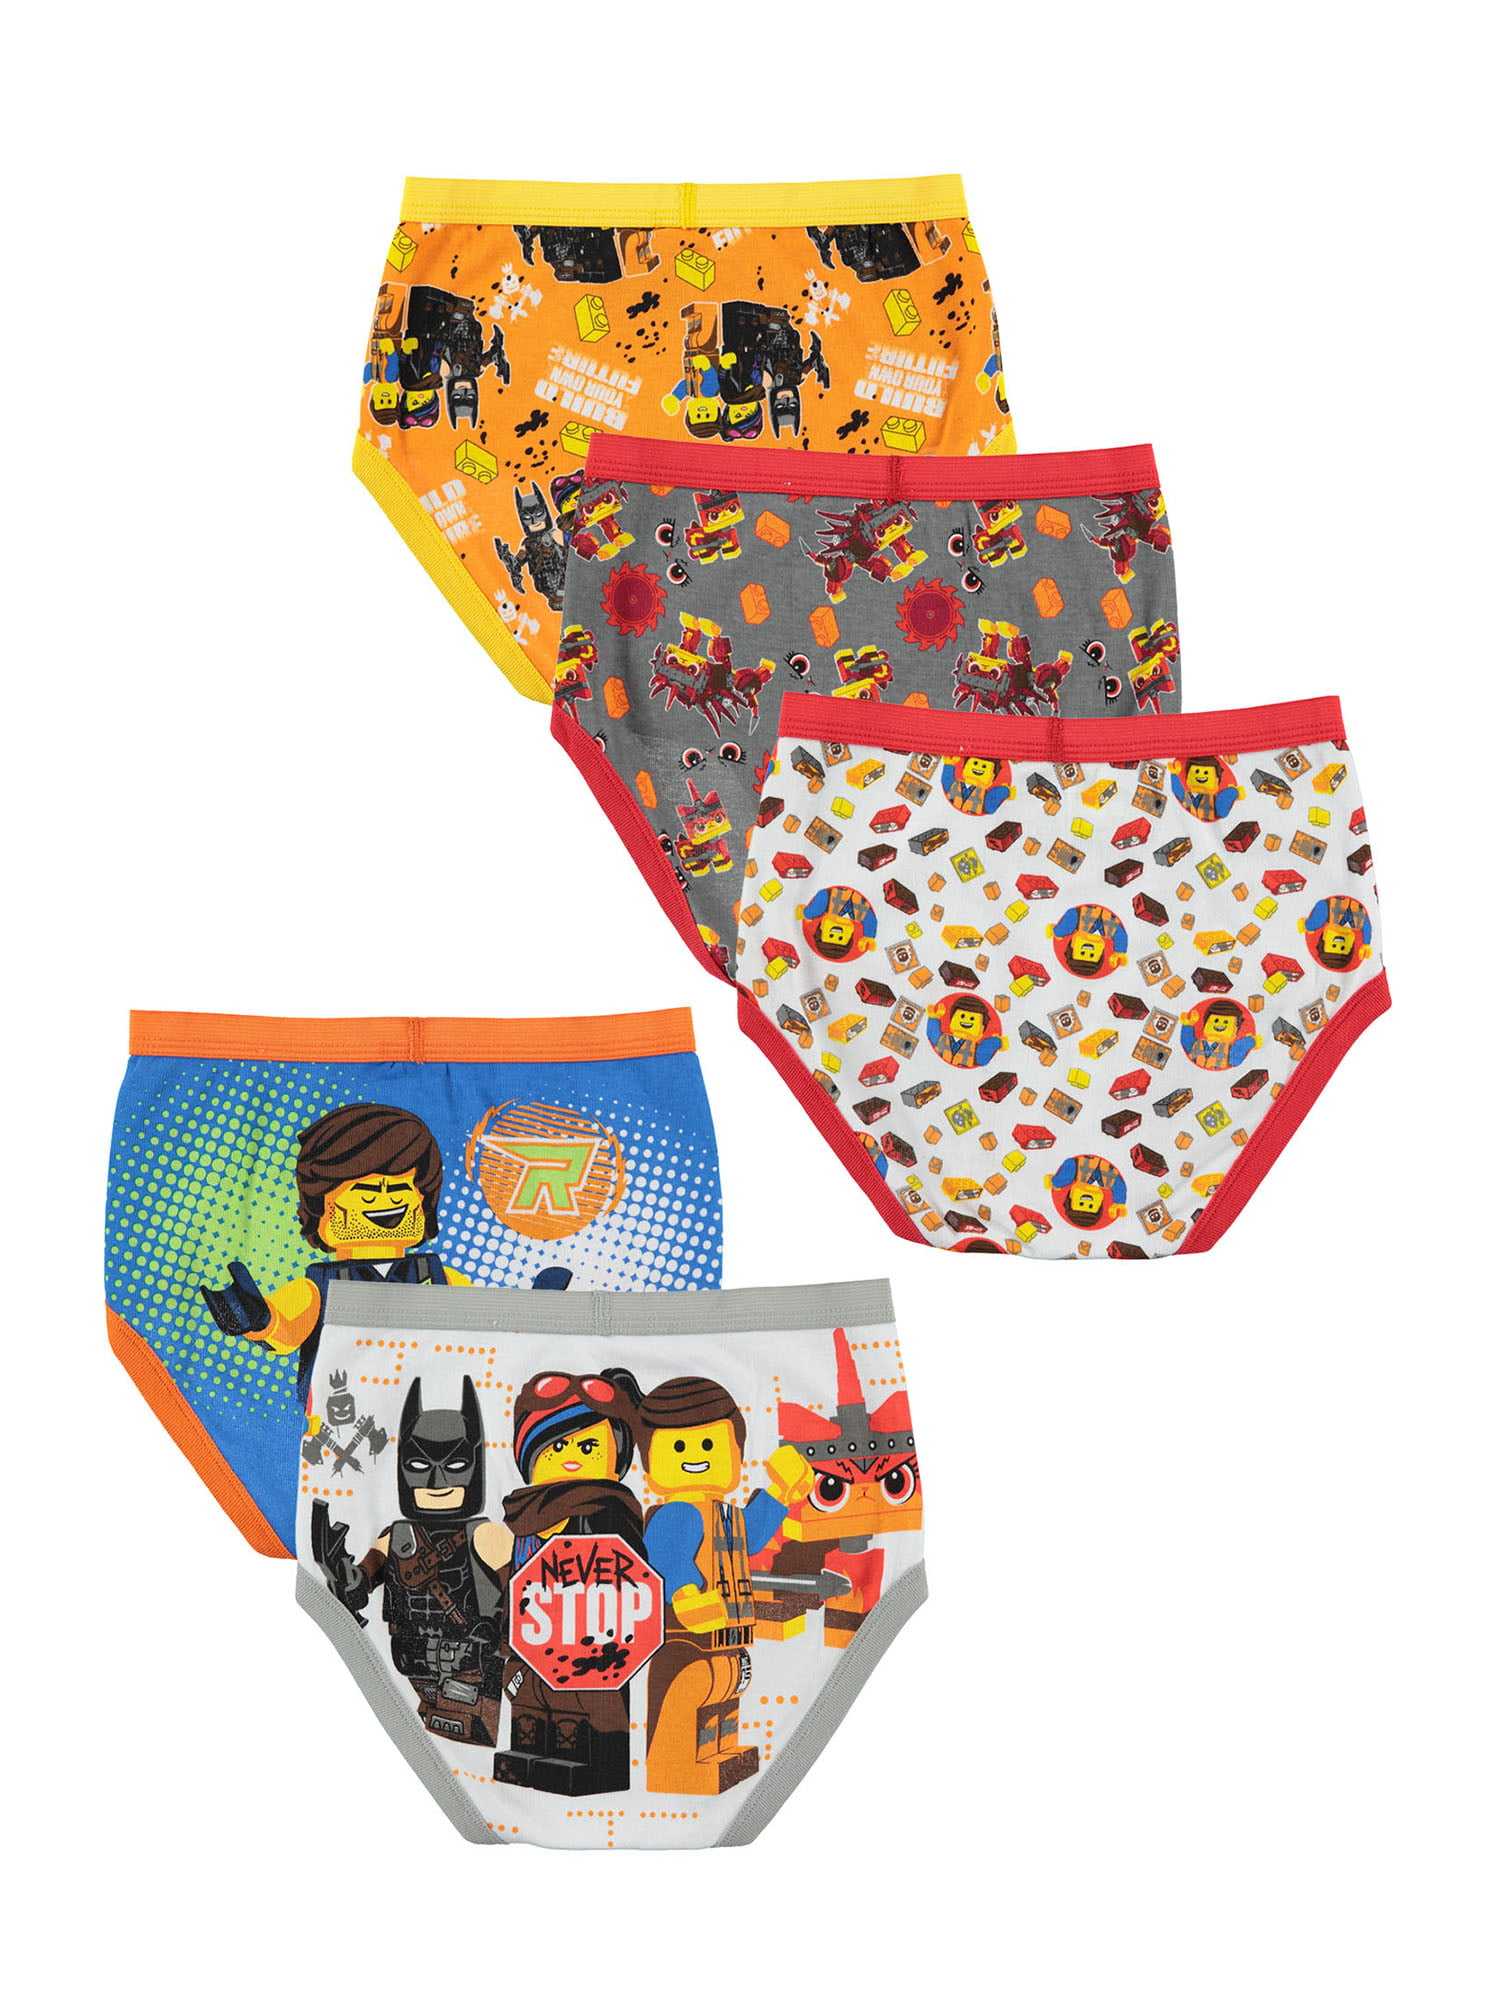 LEGO Movie 2, Boys Underwear, 5 Pack Briefs Sizes 4 - 8